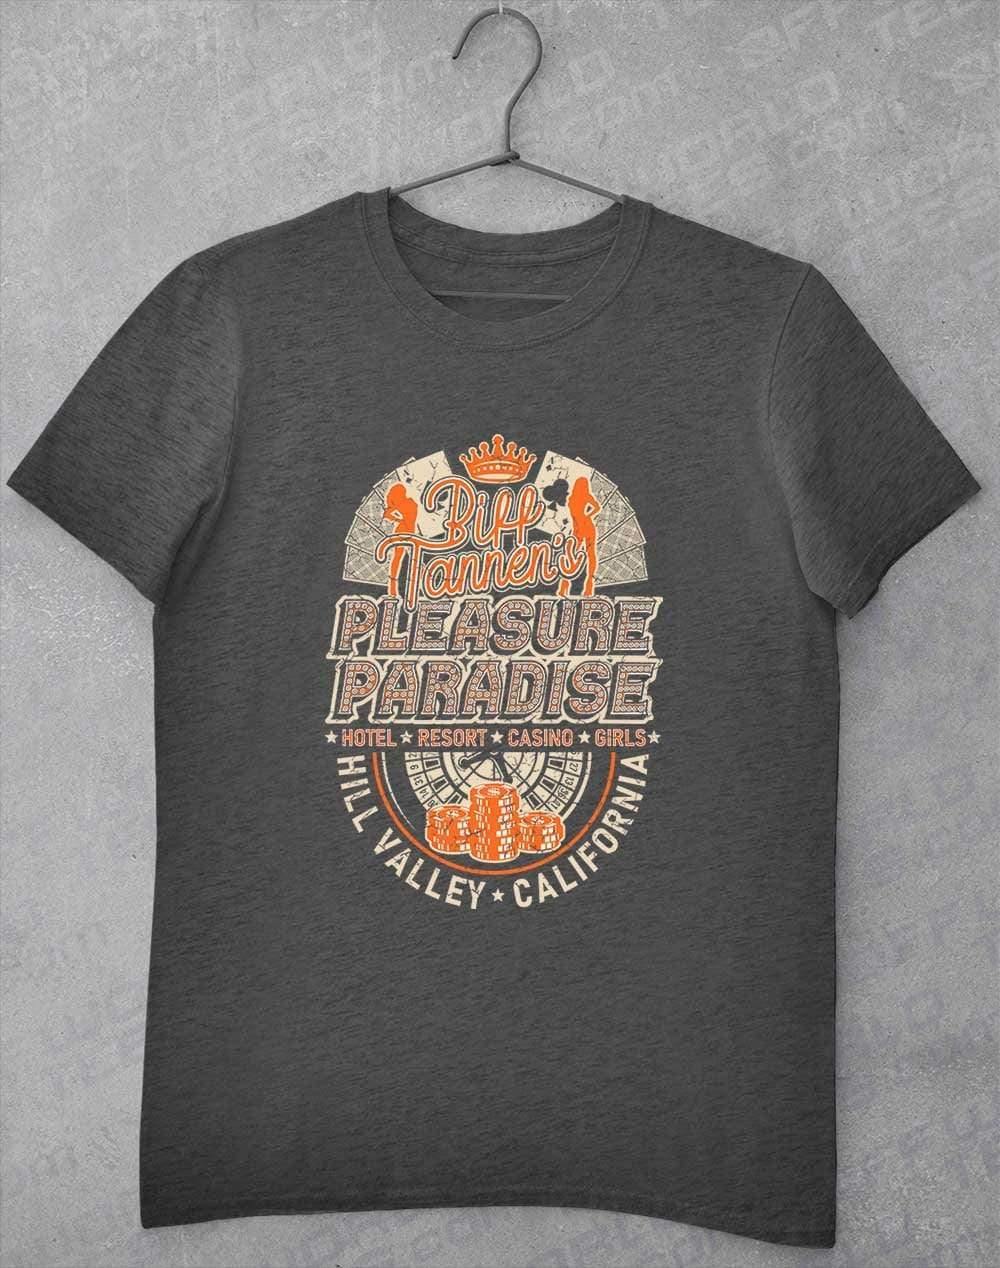 Biff Tannen's Pleasure Paradise T-Shirt S / Dark Heather  - Off World Tees